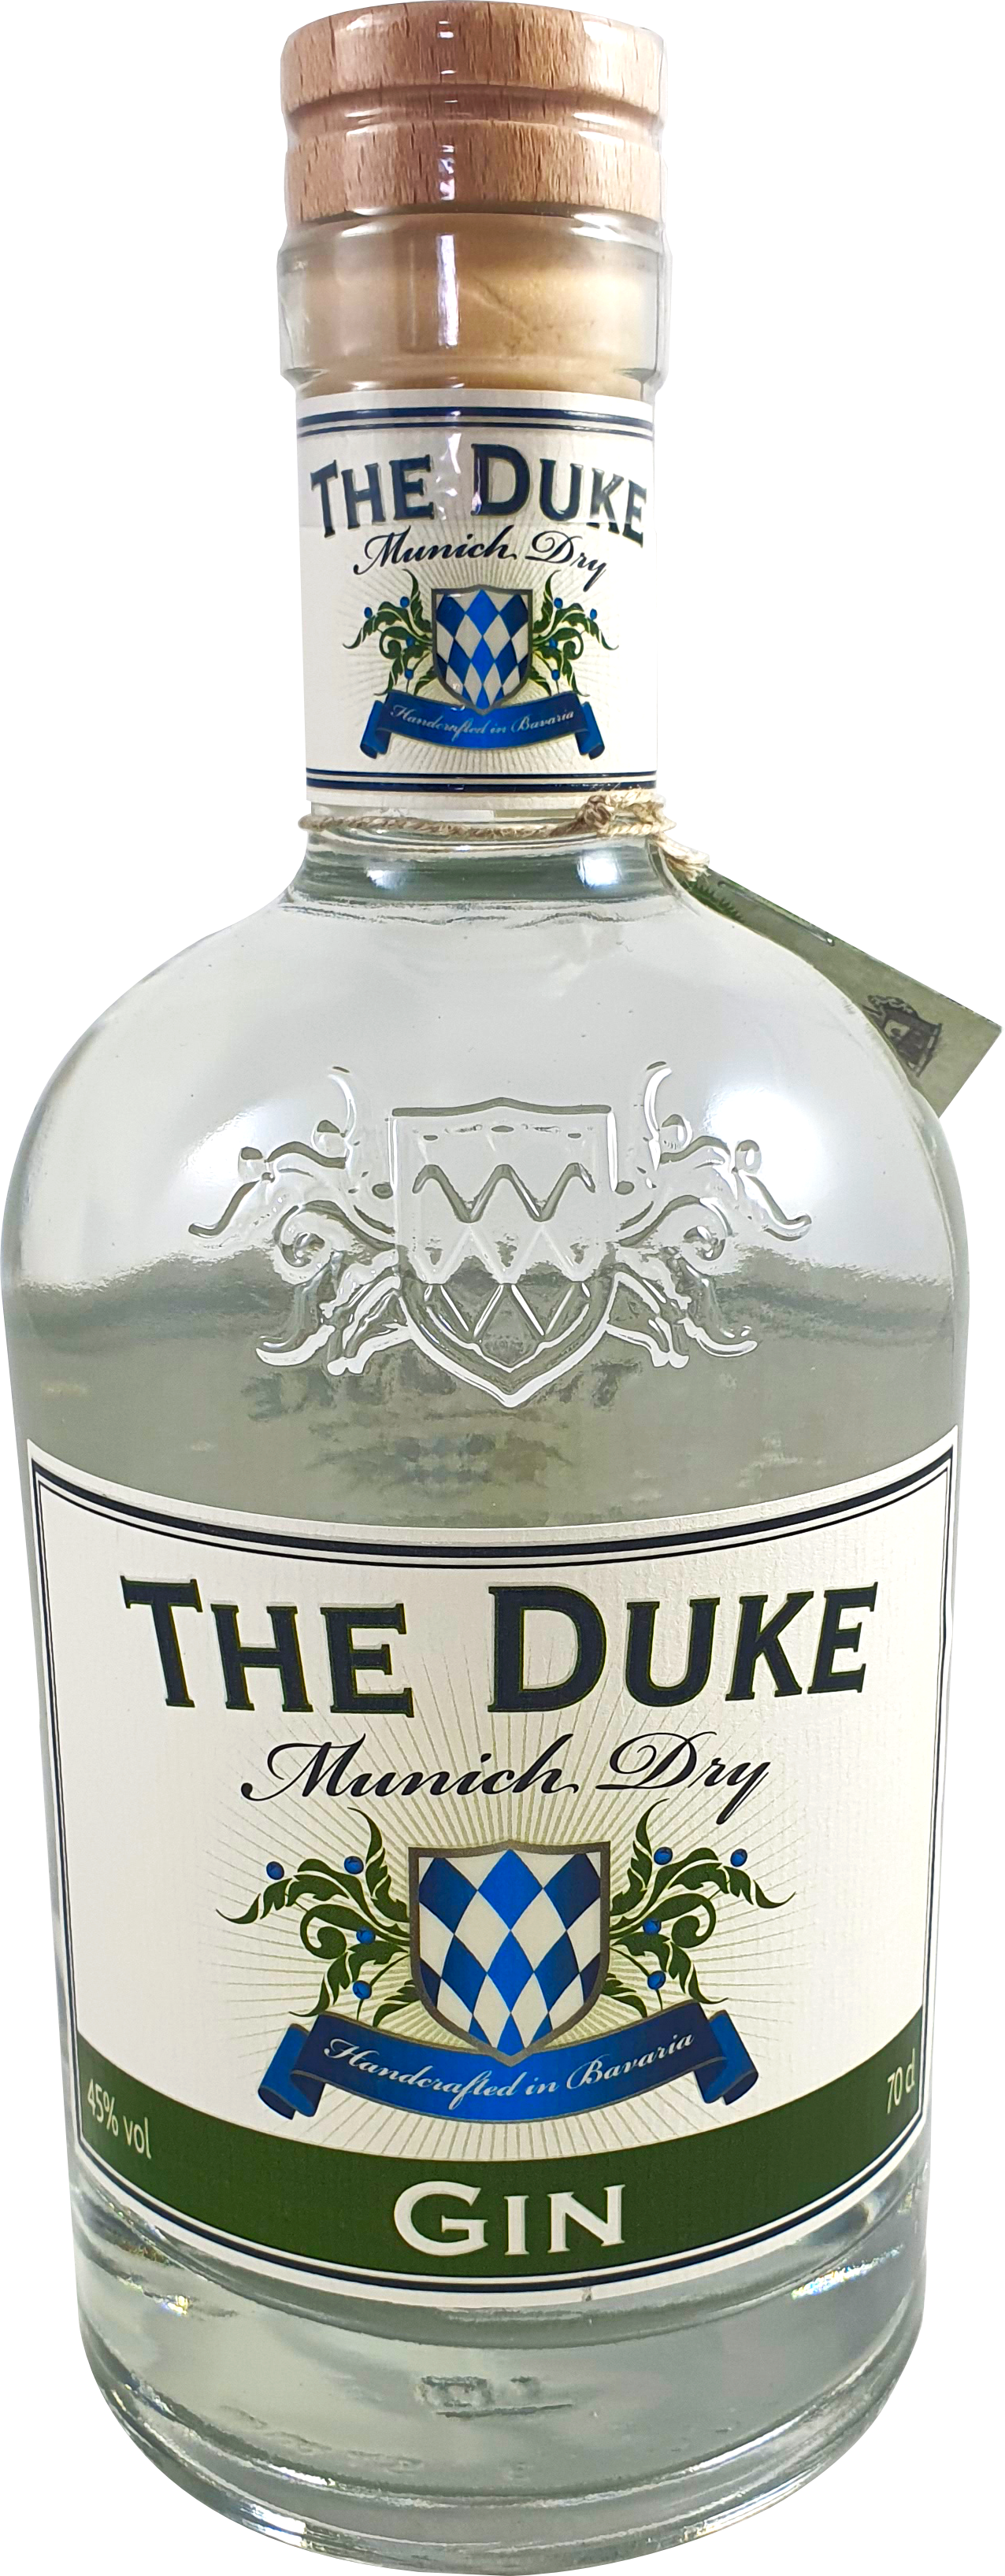 The Gin 45% Bio Duke